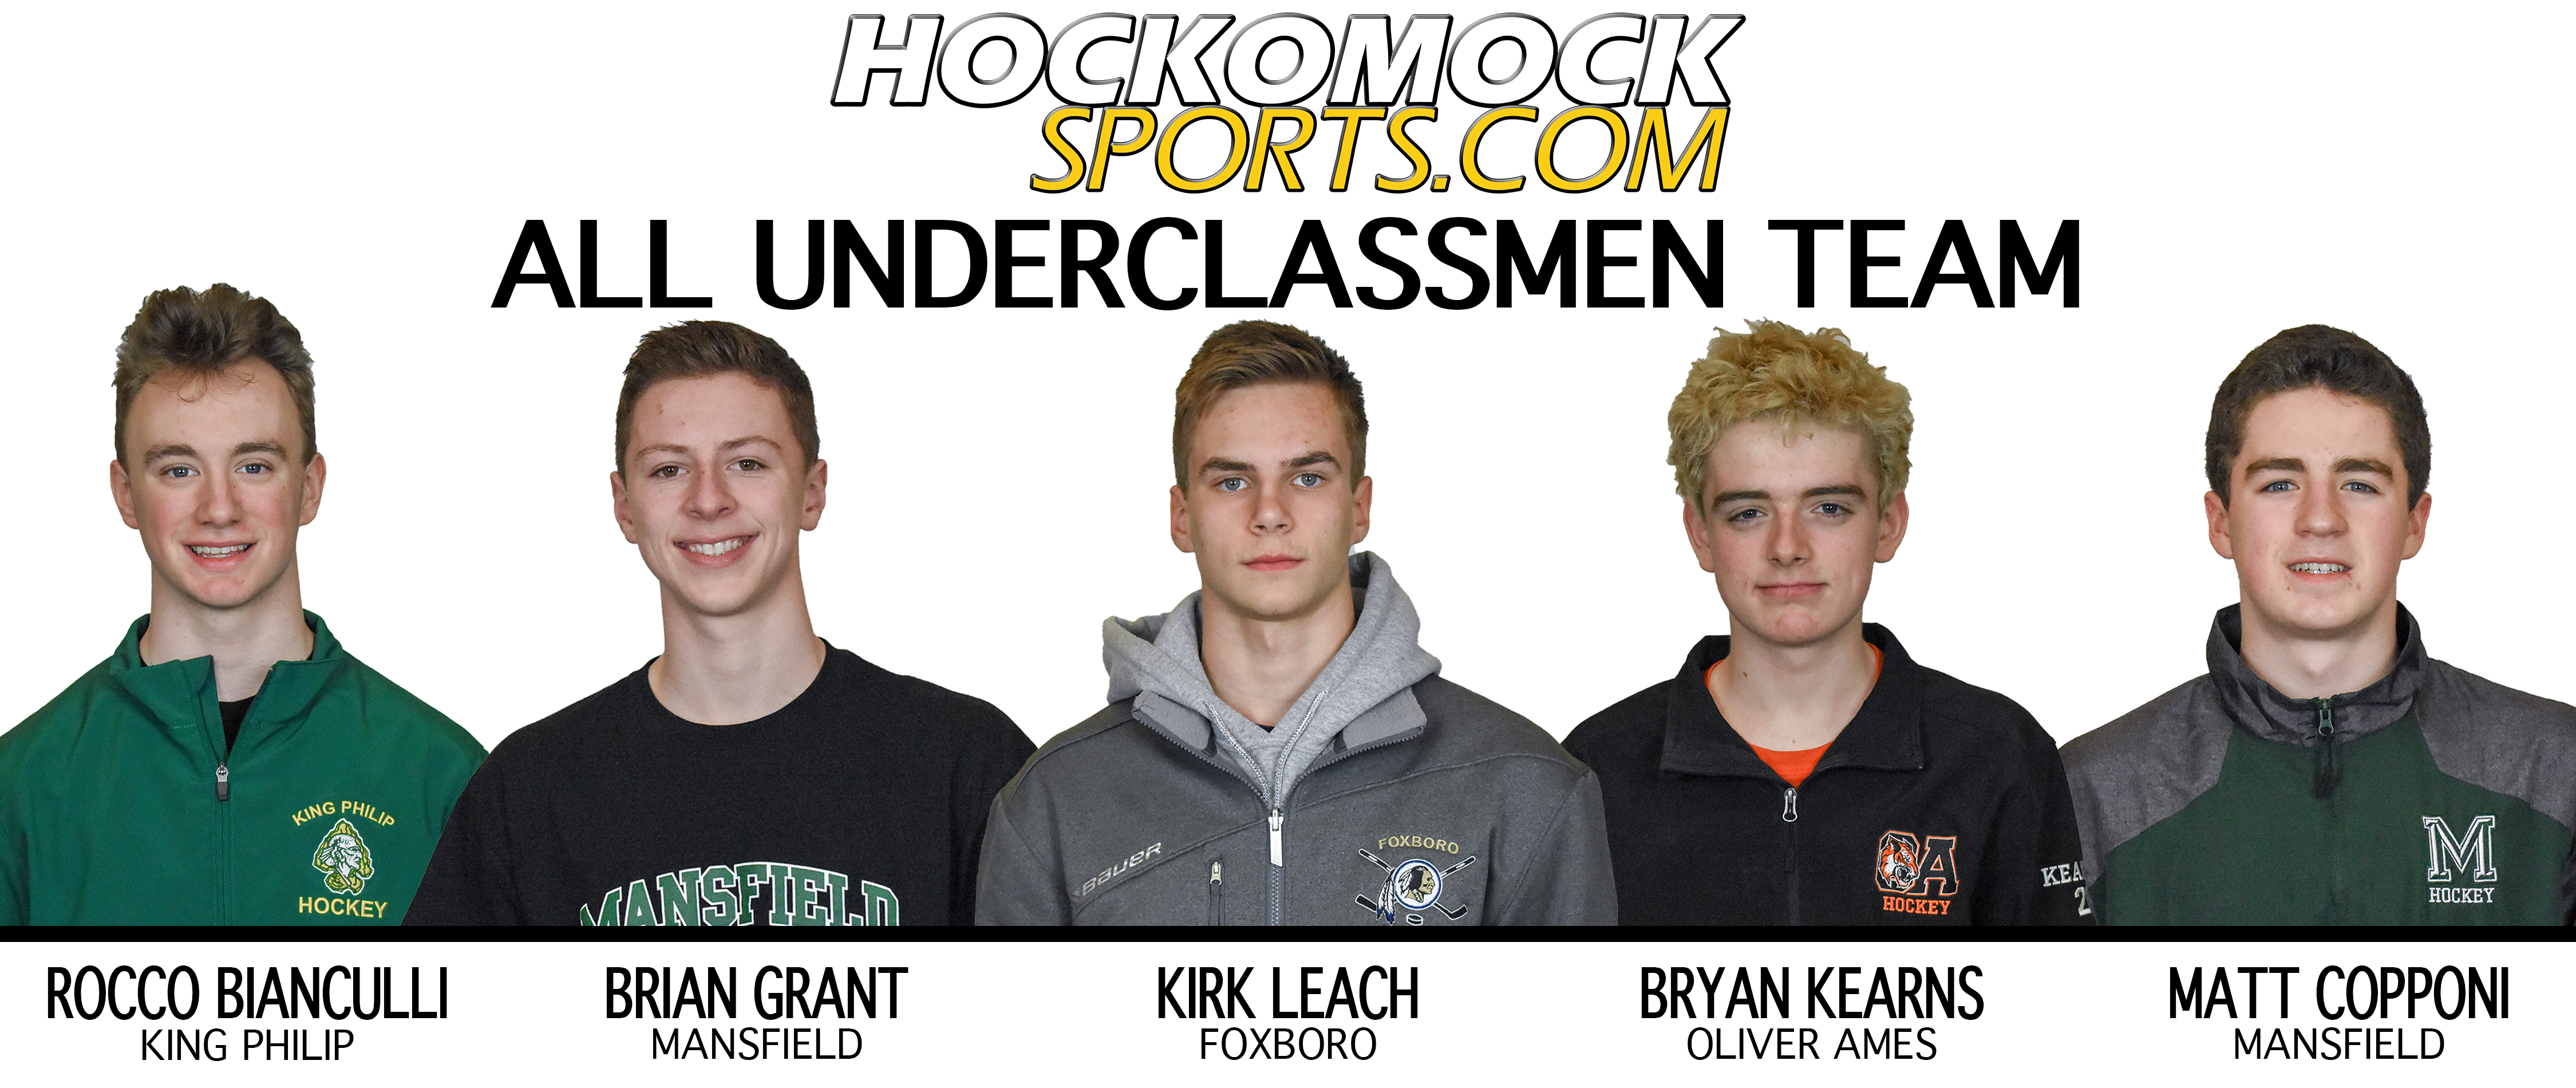 2019 HockomockSports Boys Hockey Awards